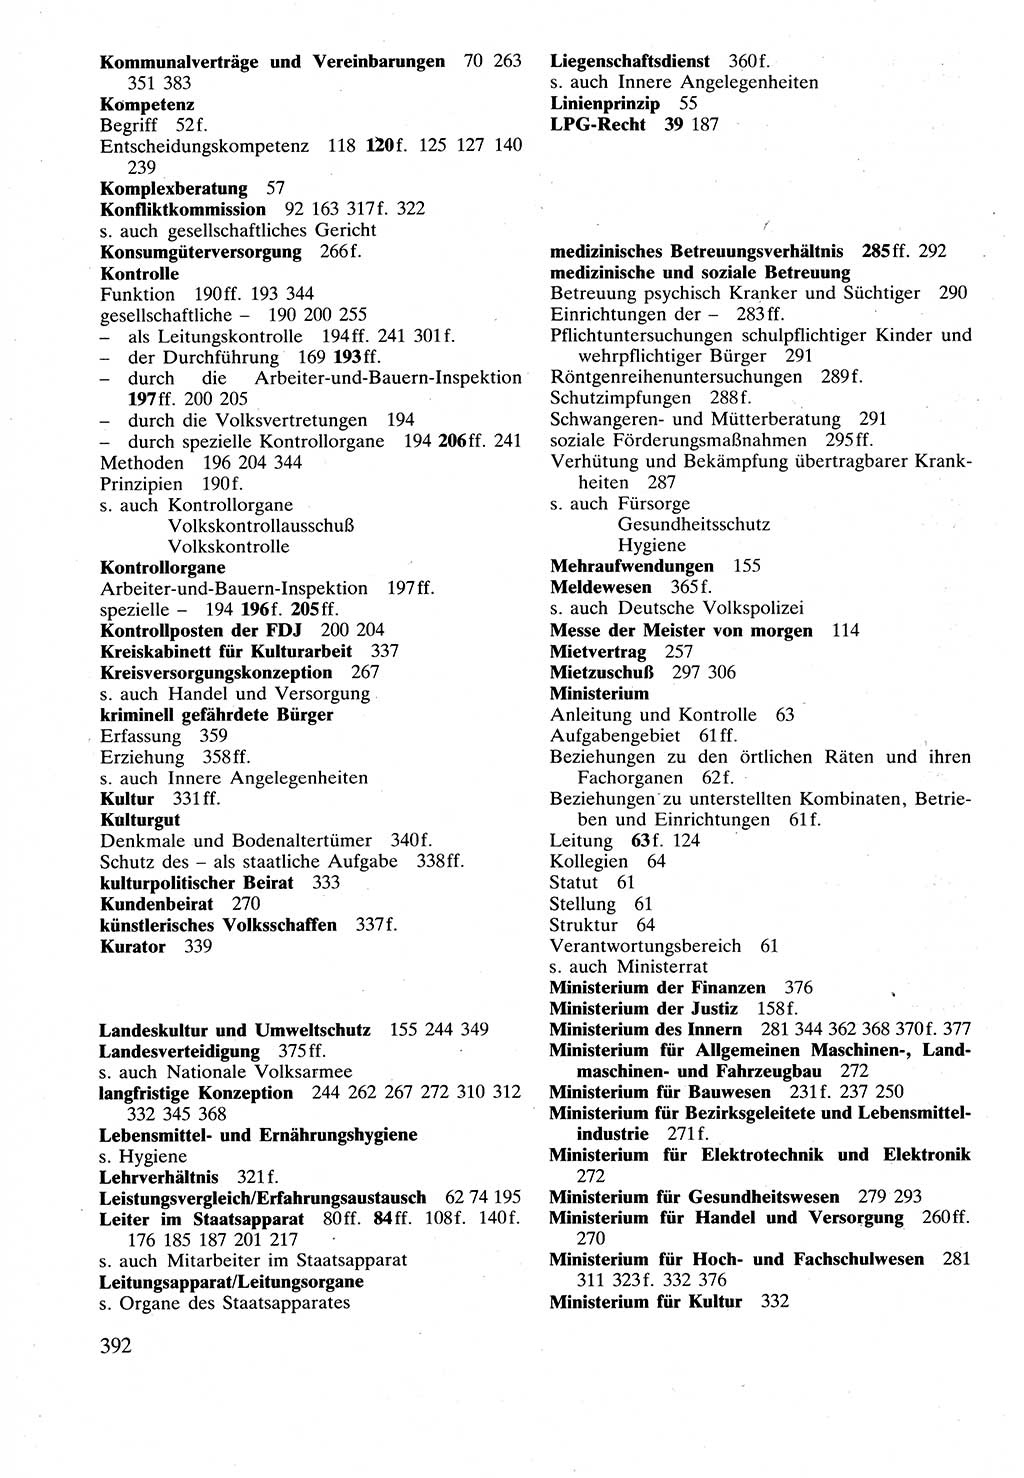 Verwaltungsrecht [Deutsche Demokratische Republik (DDR)], Lehrbuch 1988, Seite 392 (Verw.-R. DDR Lb. 1988, S. 392)